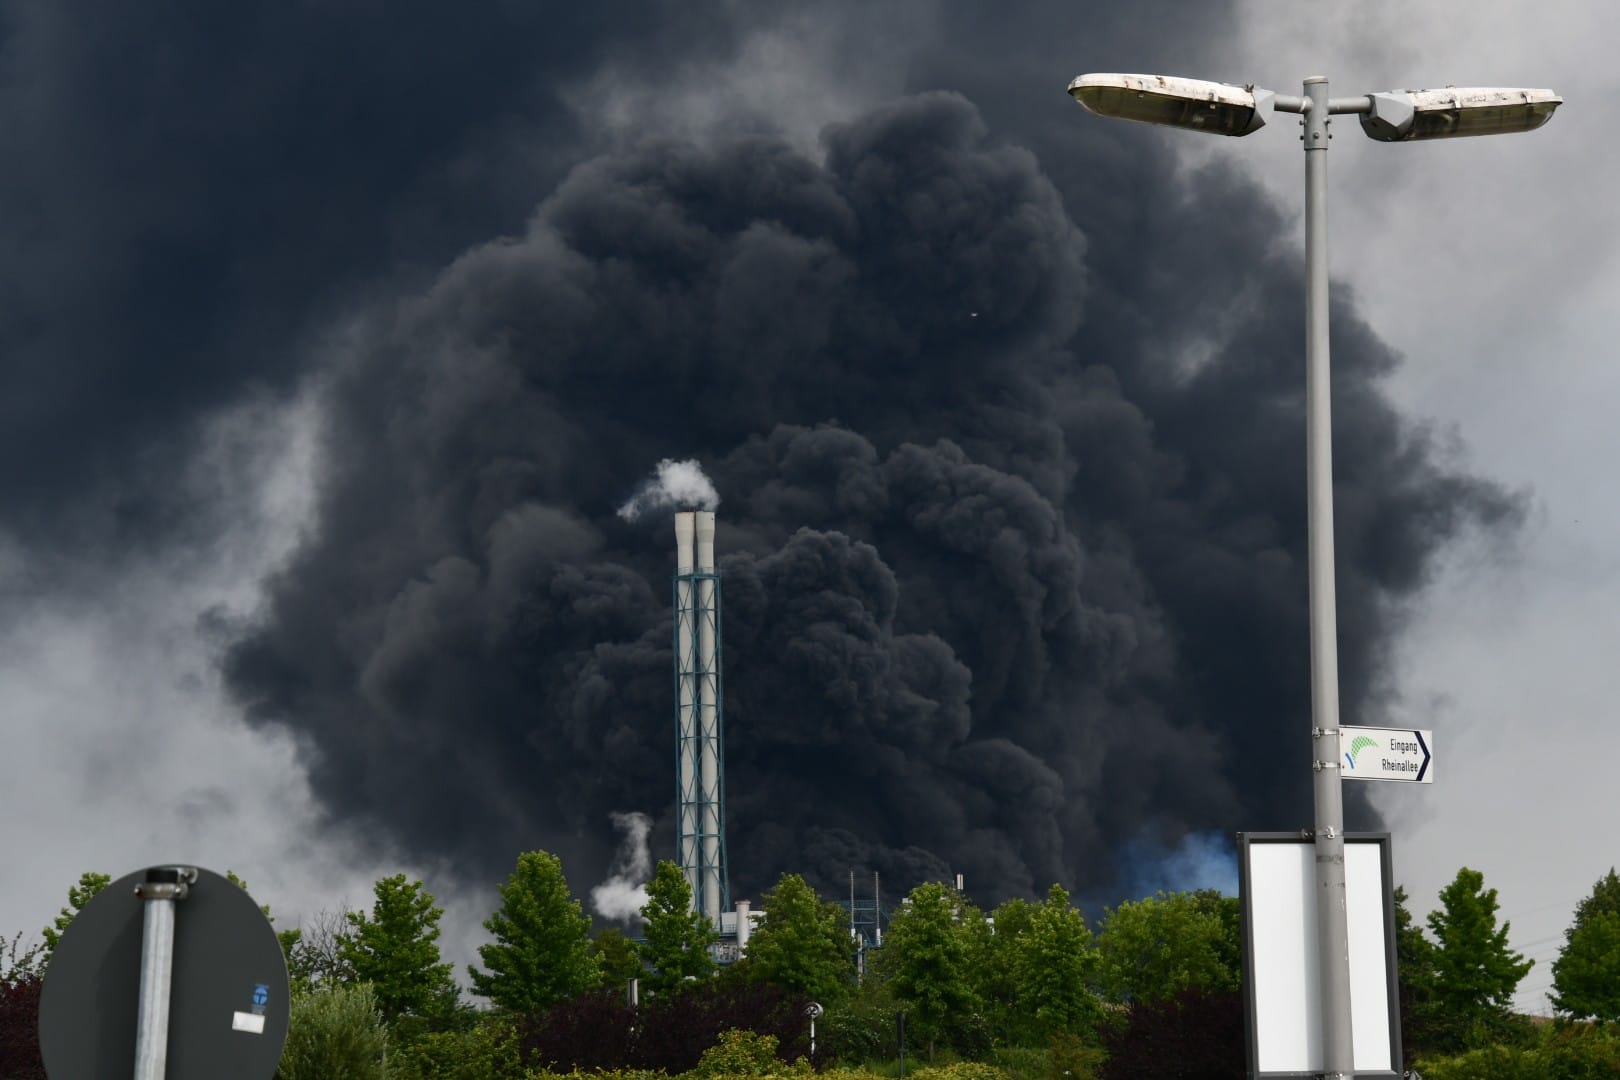 Im Chempark Leverkusen ist es am Dienstagmorgen aus bisher unbekannten Gründen zu einer Explosion gekommen. Dabei ist mindestens eine Person ums Leben gekommen, mehrere Menschen wurden teils schwer verletzt. 16 Menschen werden noch vermisst.